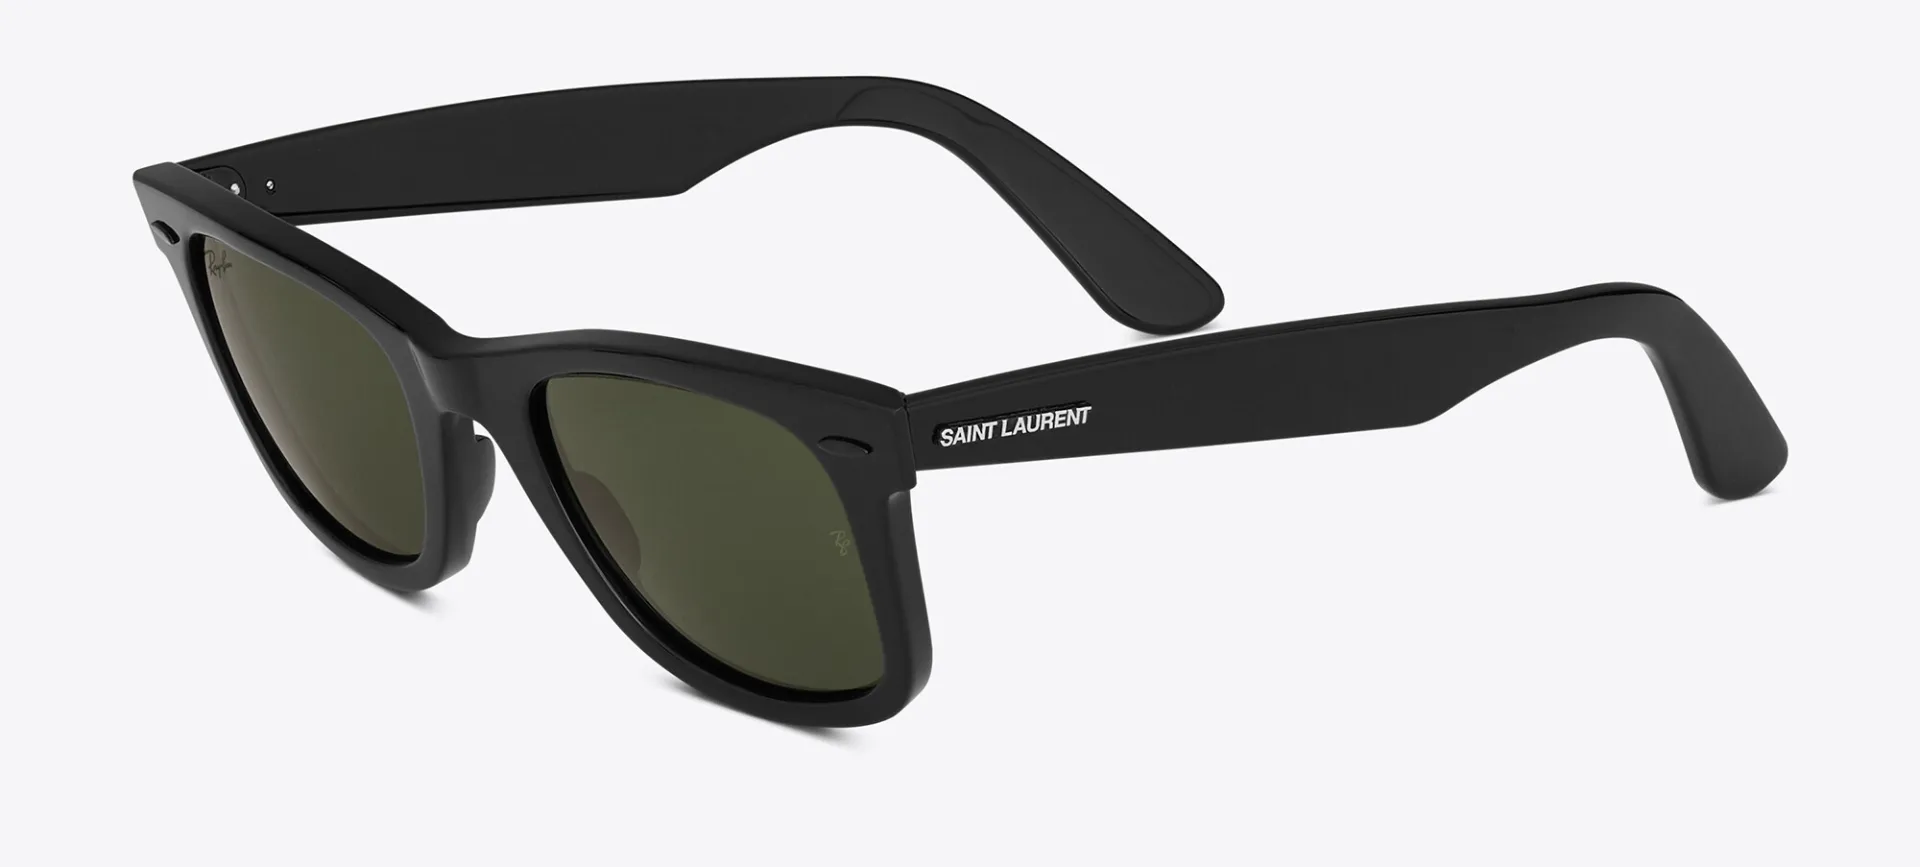 Así son los nuevos lentes de sol de Ray Ban y Saint Laurent